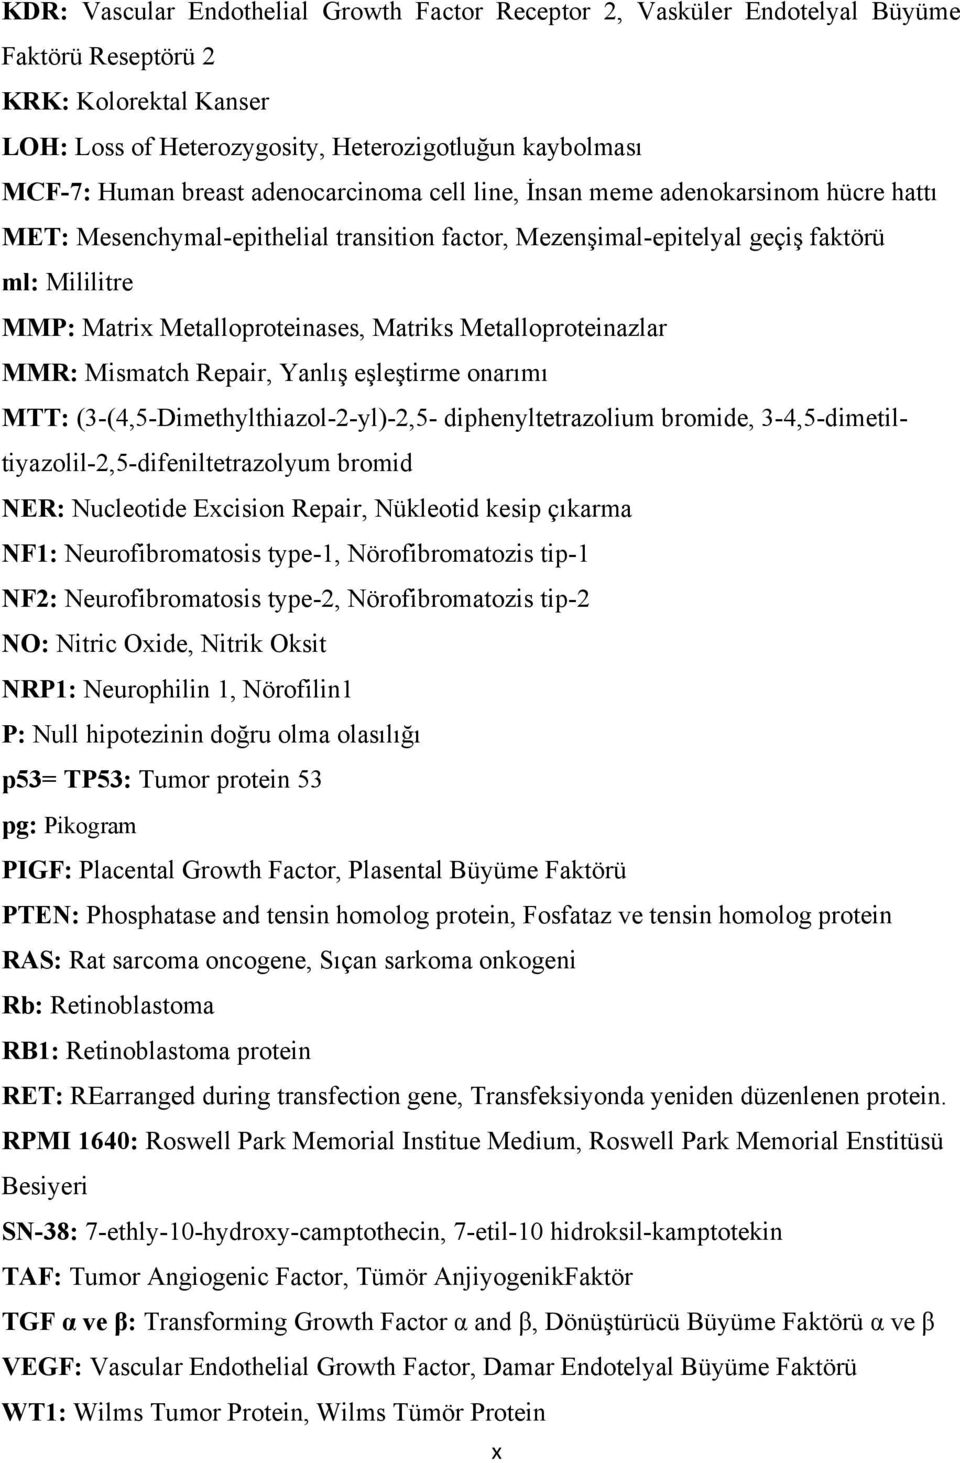 Metalloproteinazlar MMR: Mismatch Repair, Yanlış eşleştirme onarımı MTT: (3-(4,5-Dimethylthiazol-2-yl)-2,5- diphenyltetrazolium bromide, 3-4,5-dimetiltiyazolil-2,5-difeniltetrazolyum bromid NER: